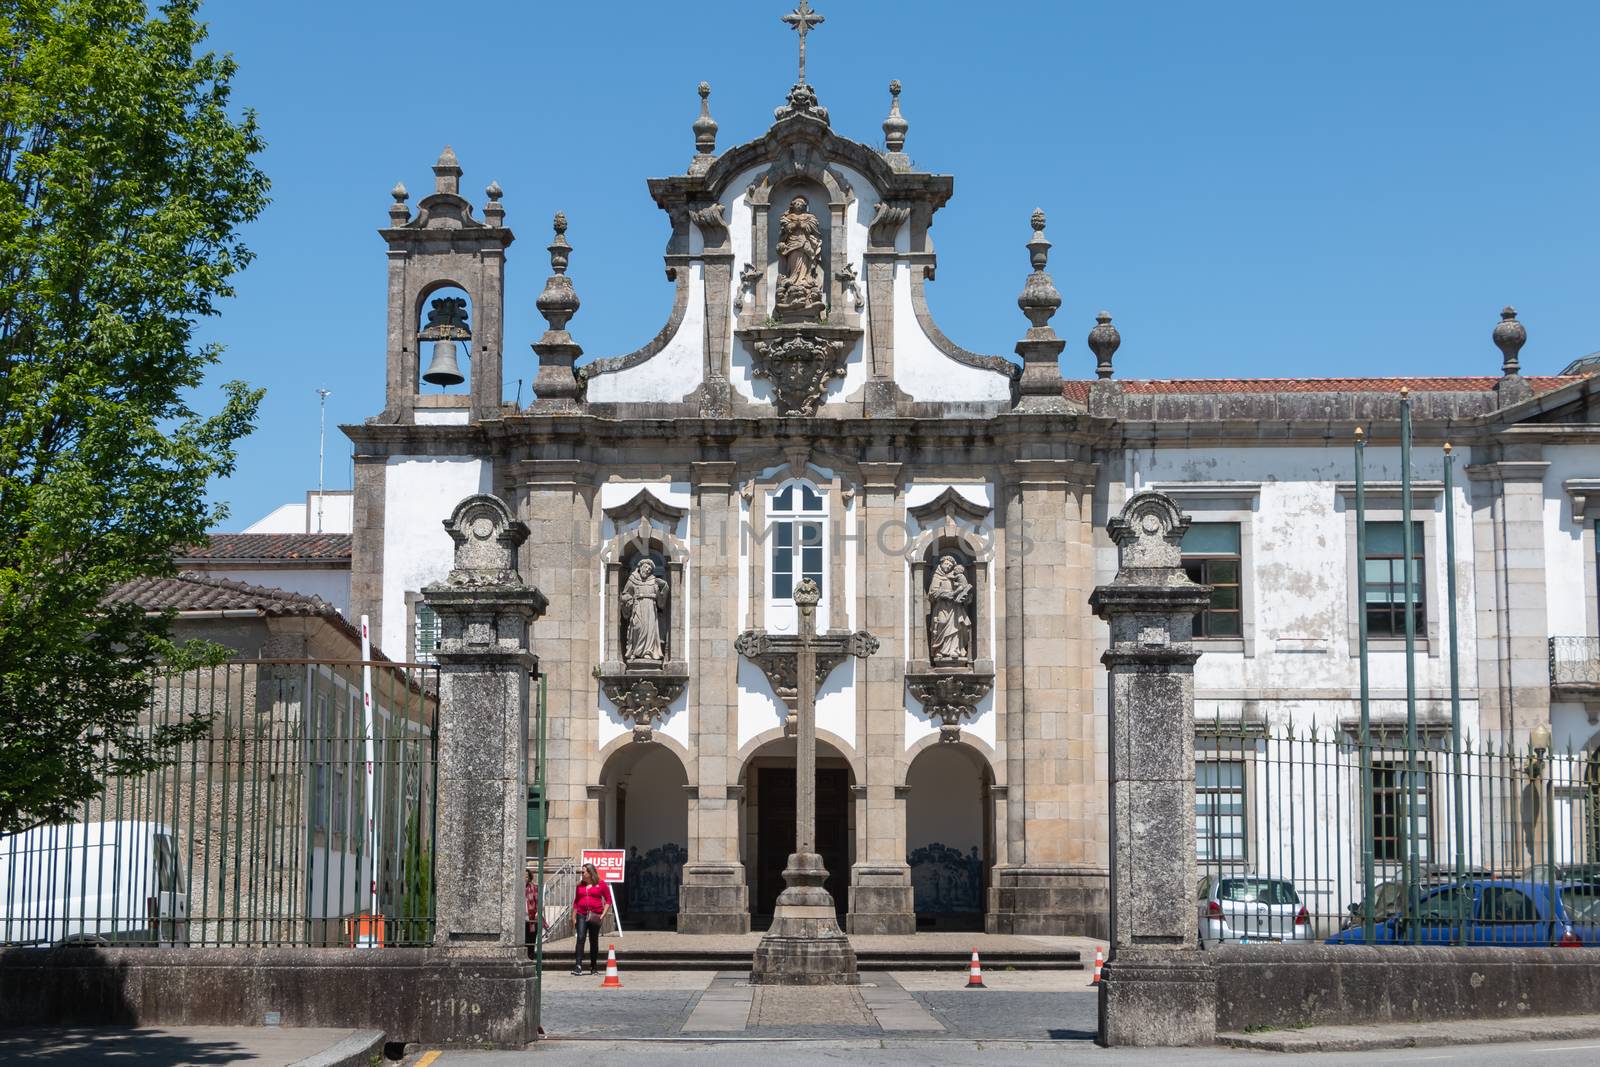 Convent of Santo Antonio dos Capuchos in guimaraes, portugal by AtlanticEUROSTOXX